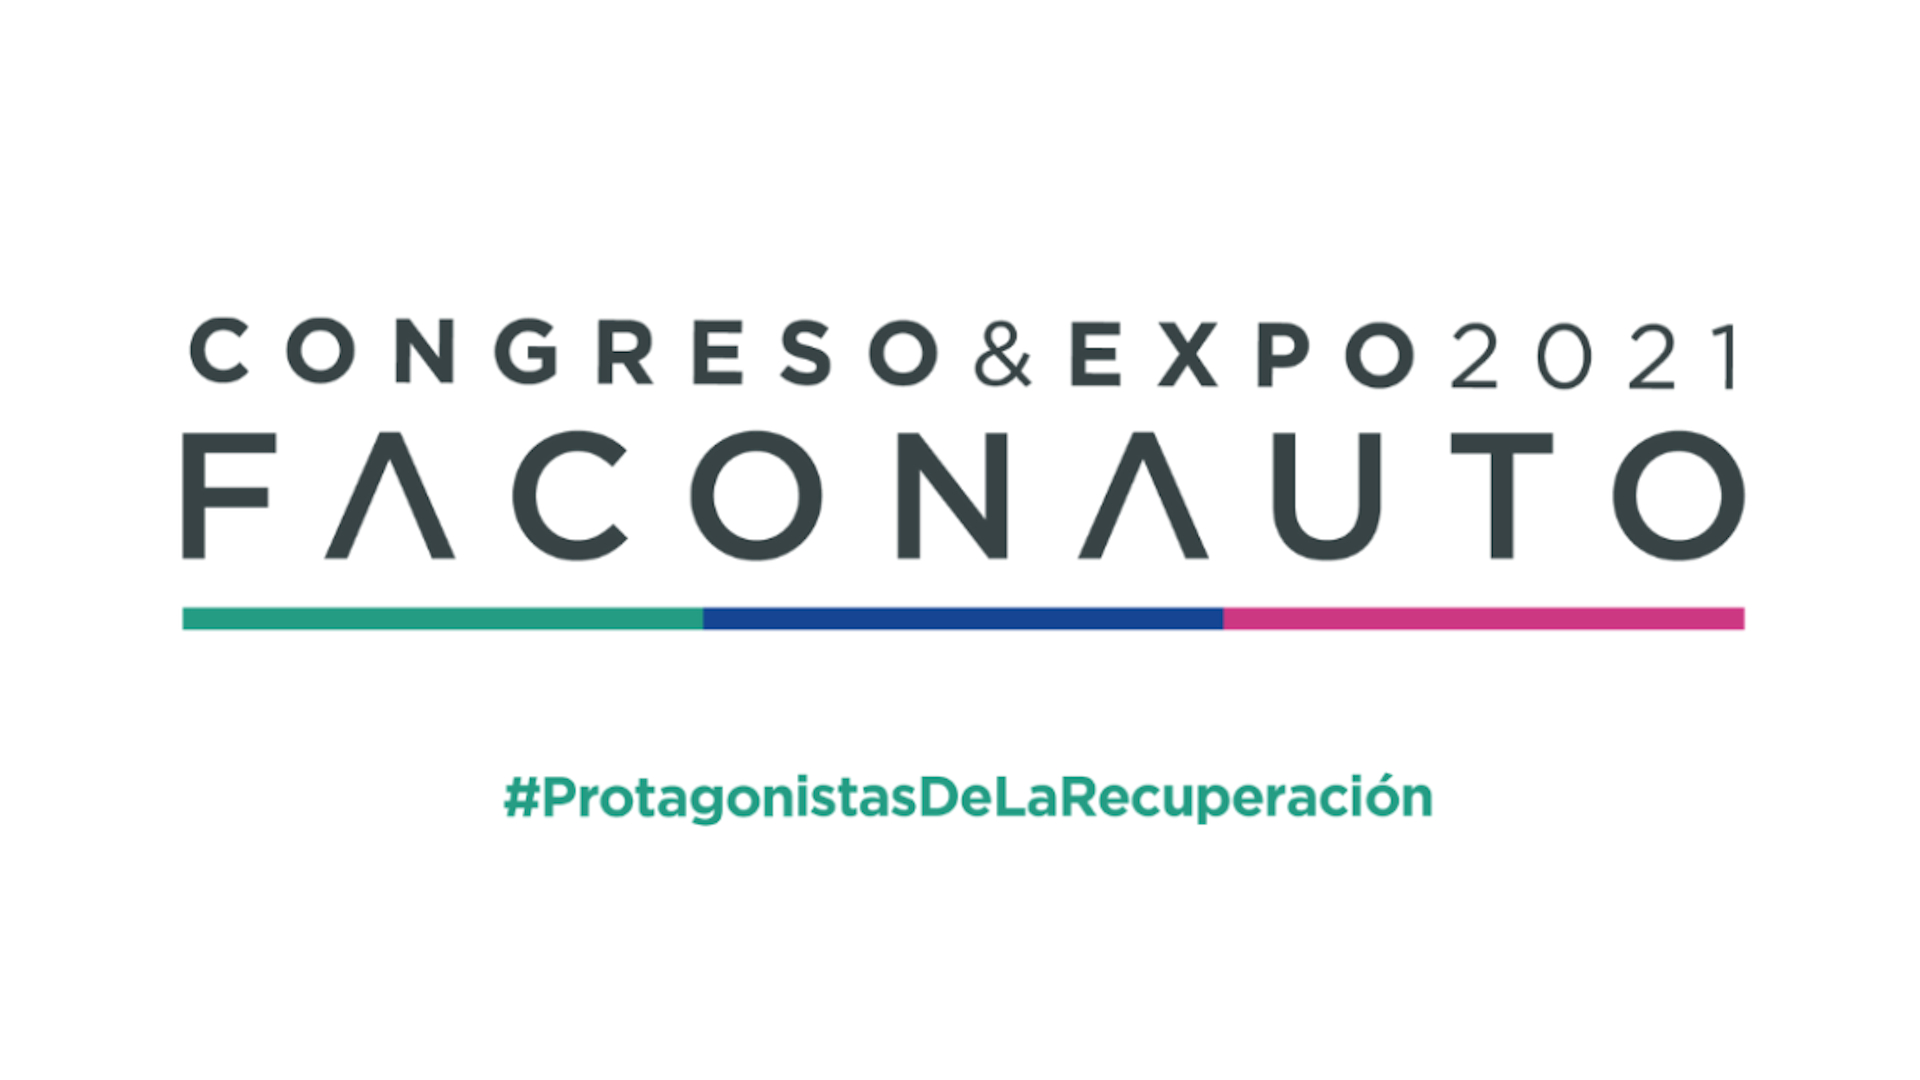 Congreso & Expo Faconauto 2021